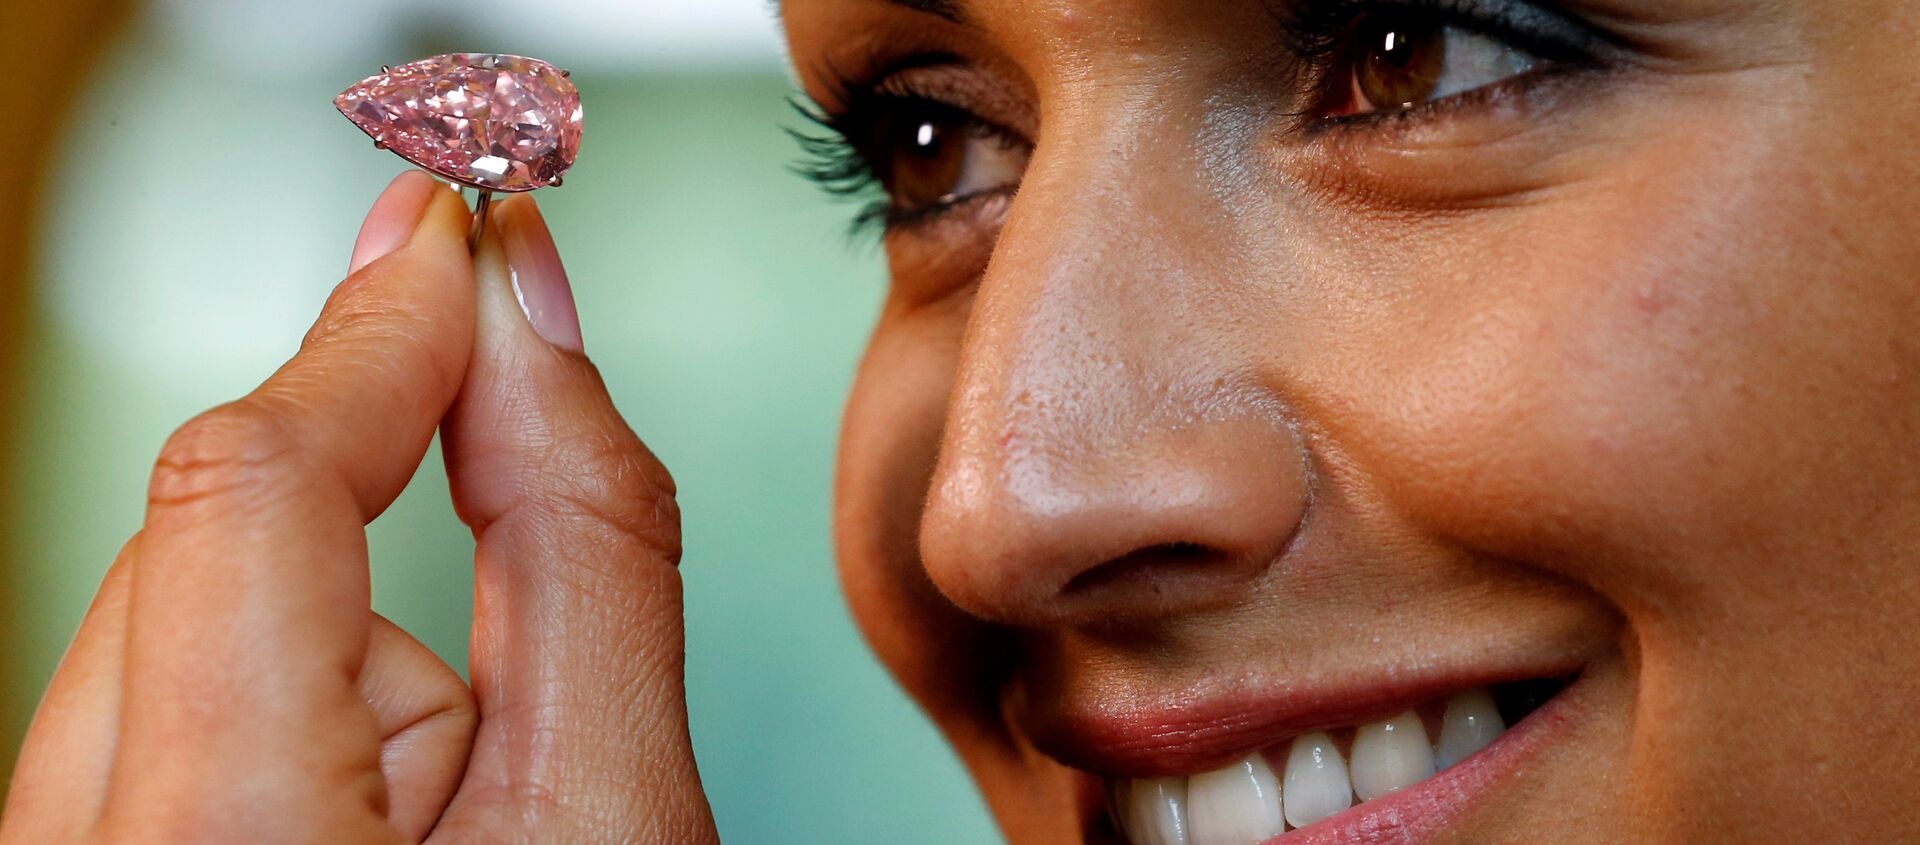 Крупнейший розовый бриллиант, известный как Уникальный розовый (Unique Pink) - Sputnik Ўзбекистон, 1920, 24.02.2021